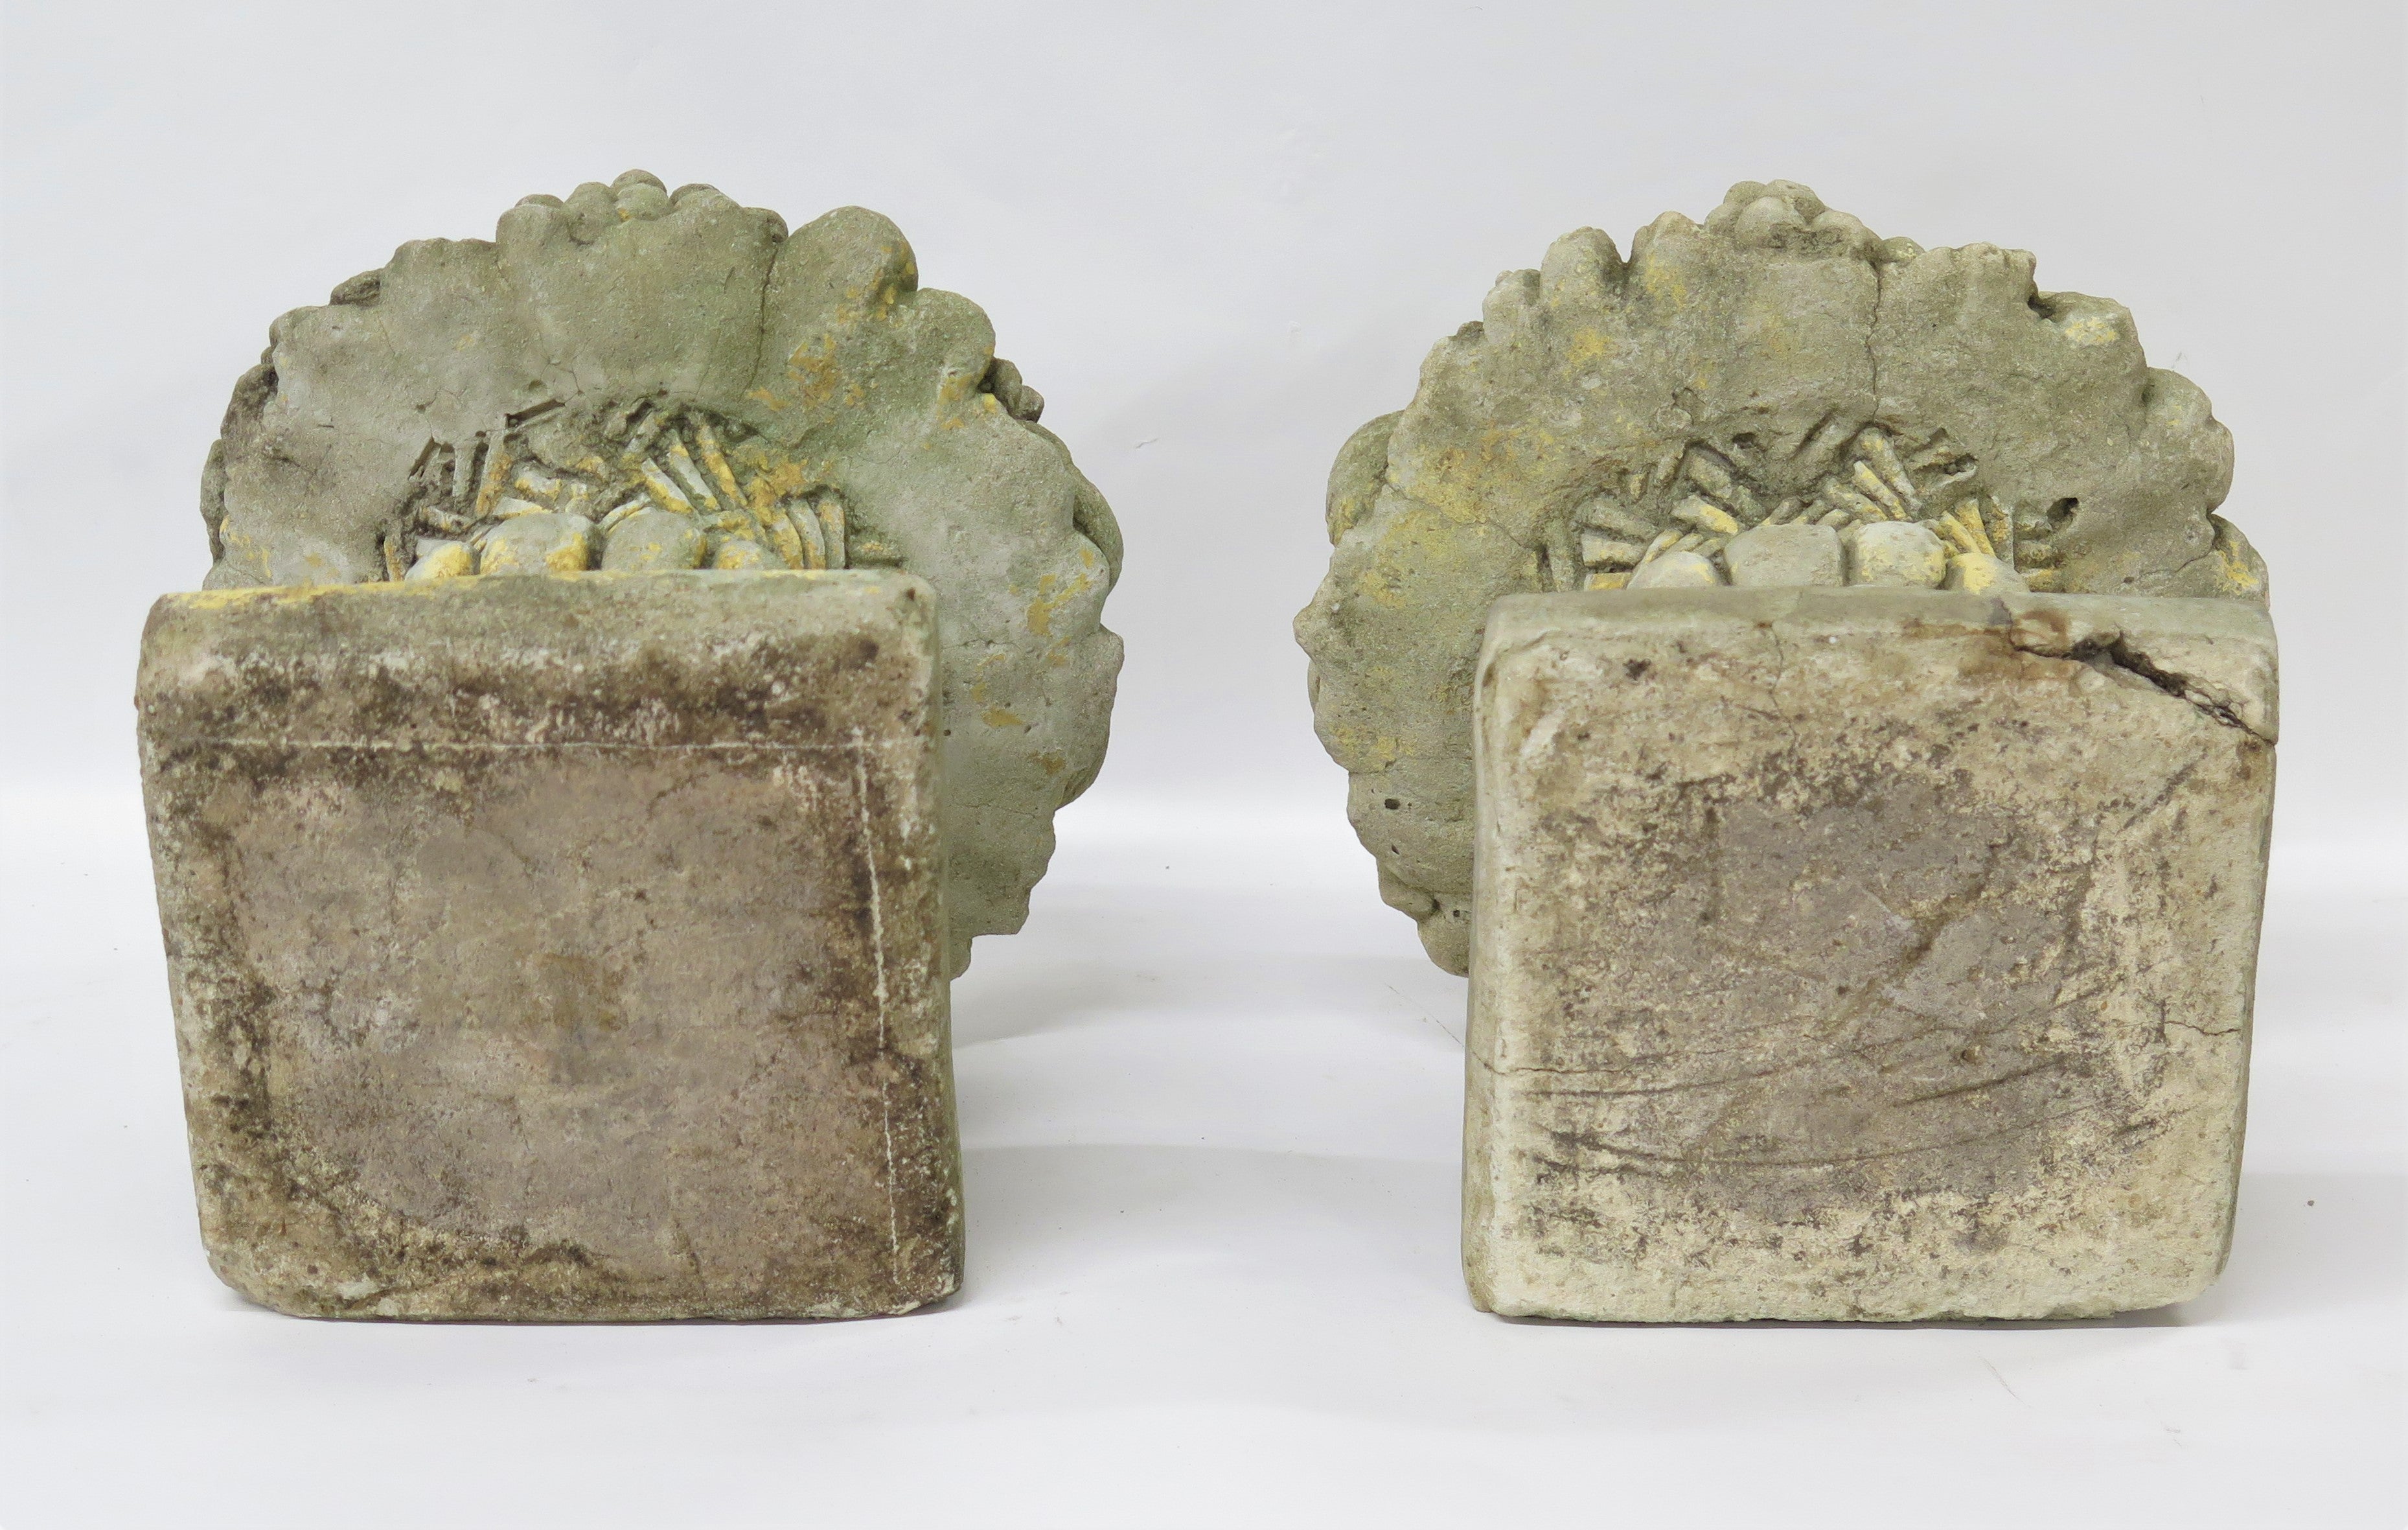 Two Cast Concrete Fruit / Flower Basket Garden Ornaments